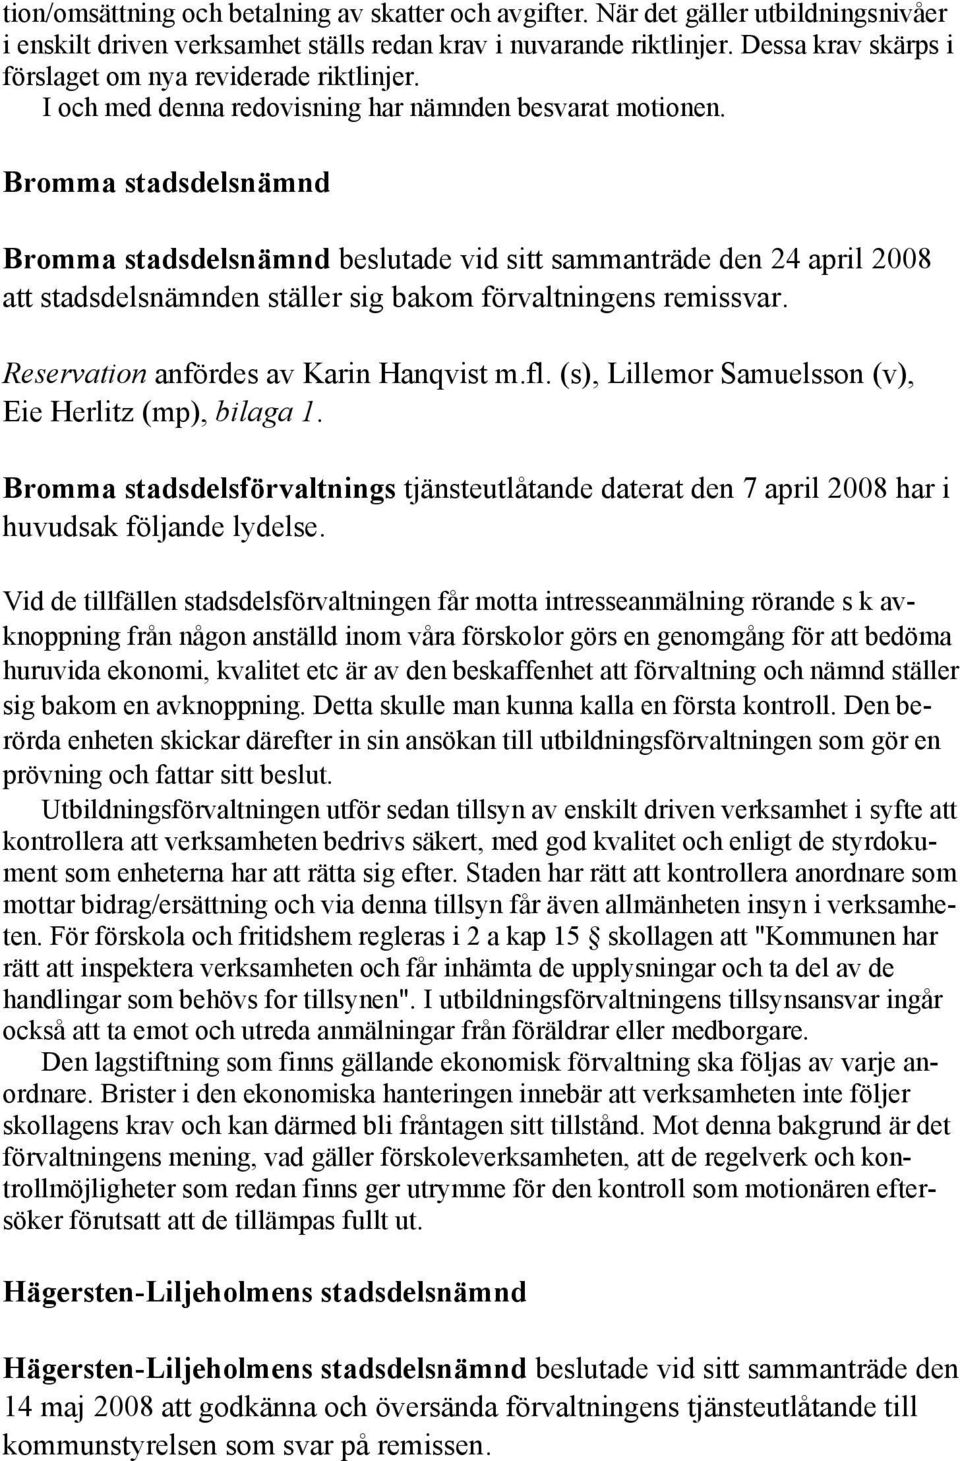 Bromma stadsdelsnämnd Bromma stadsdelsnämnd beslutade vid sitt sammanträde den 24 april 2008 att stadsdelsnämnden ställer sig bakom förvaltningens remissvar. Reservation anfördes av Karin Hanqvist m.